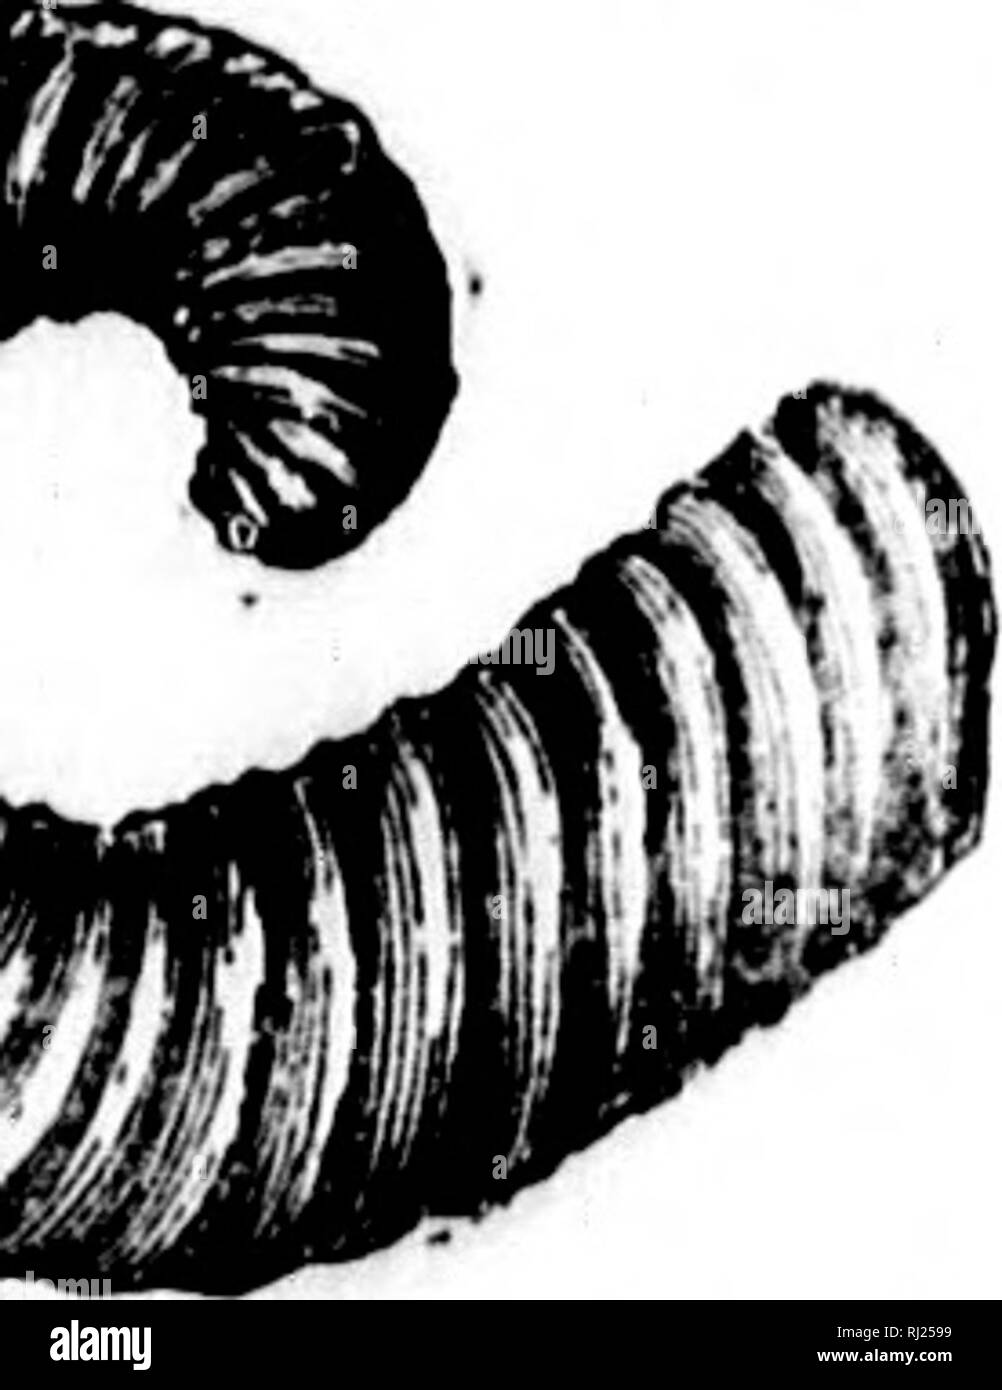 . North American Geologie und Paläontologie für die Verwendung von Laien, Studenten und Wissenschaftler [microform]. Paläontologie; Paläontologie; Geologie; PalÃ © Ontologie; Ontologie; PalÃ©GÃ©ologie. MEI,. âNAIJ.] CEPHALOPODA. 448. , Pal. Foss., Vol. niagarensis, Spencer, 1884, Bull. Nr. 1, Mus. Univ. St. Mo., S. 60, Niagara Gr. omderUalw, HhH, 1861, liep. von Progr. Geo. Rühren. Wis., Niagara (Ir. Diese Sorte wird jetzt von Prof. Halle zur Gattung Xautilns, se bezeichnet? 20. Rep. N.Y. St. Mus. Nat. Hist., S. 400. Es wurde zuerst von MeCbesney, 31.01.1860, aa Cyrtoceras Gigant" Jum, aber der Name preoc - Stockfoto